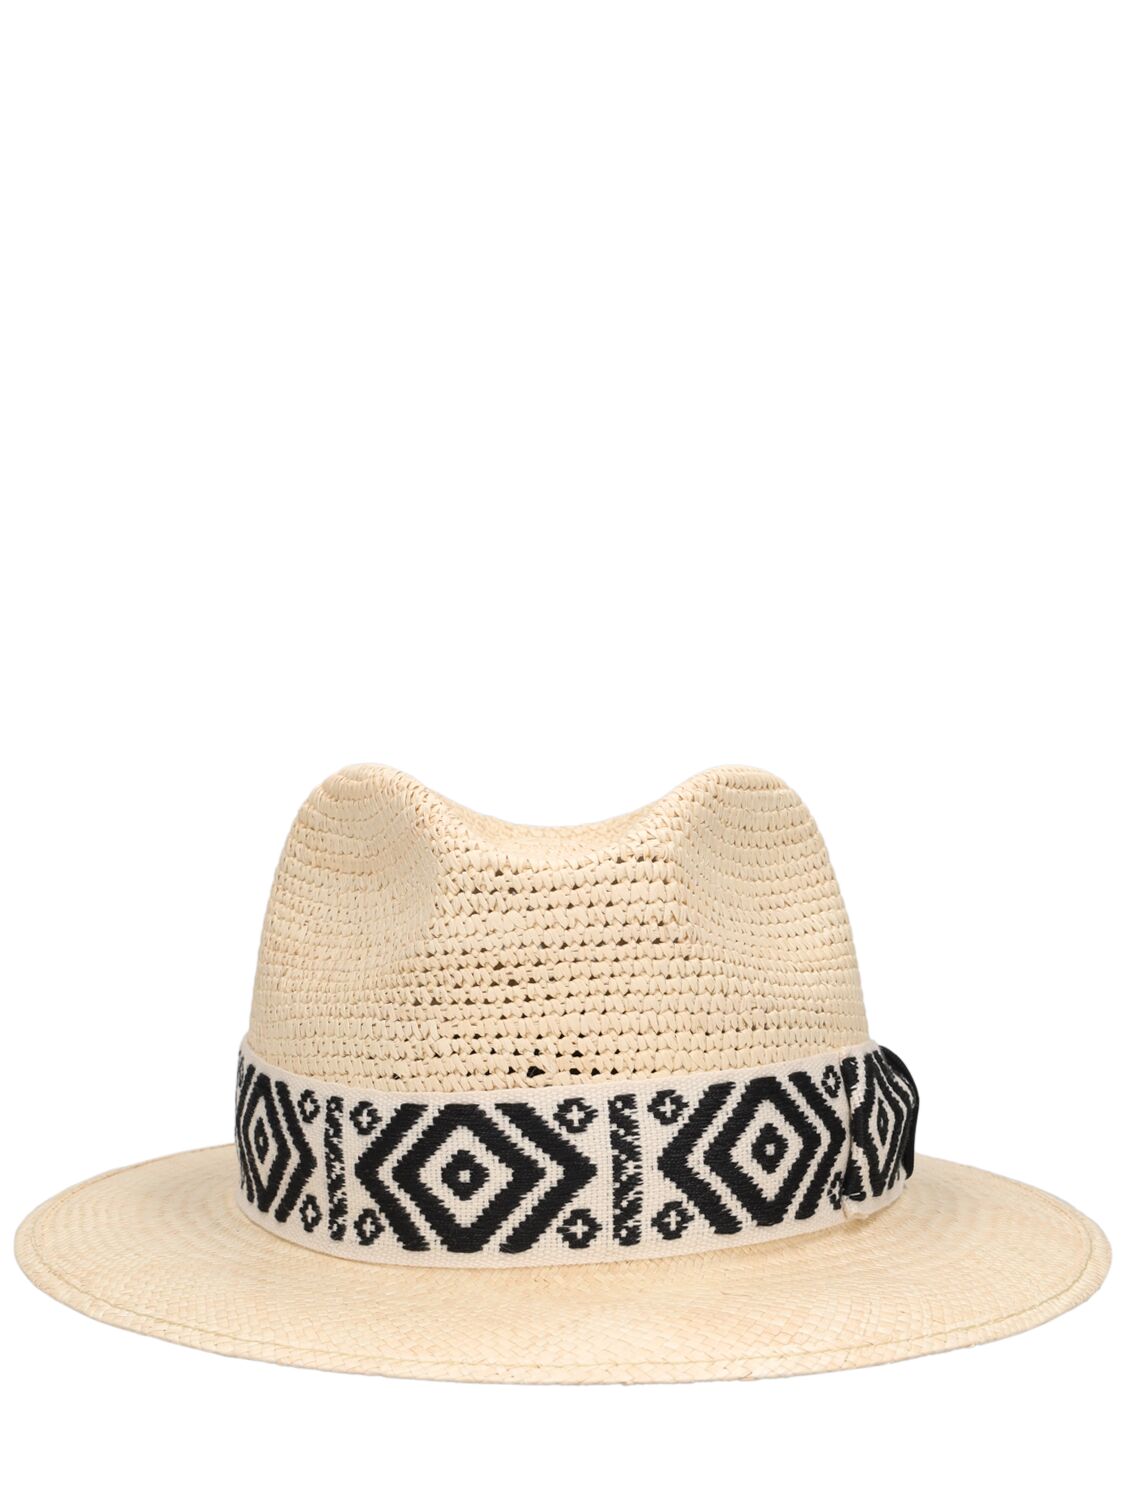 Borsalino Country Straw Panama Hat In Beige